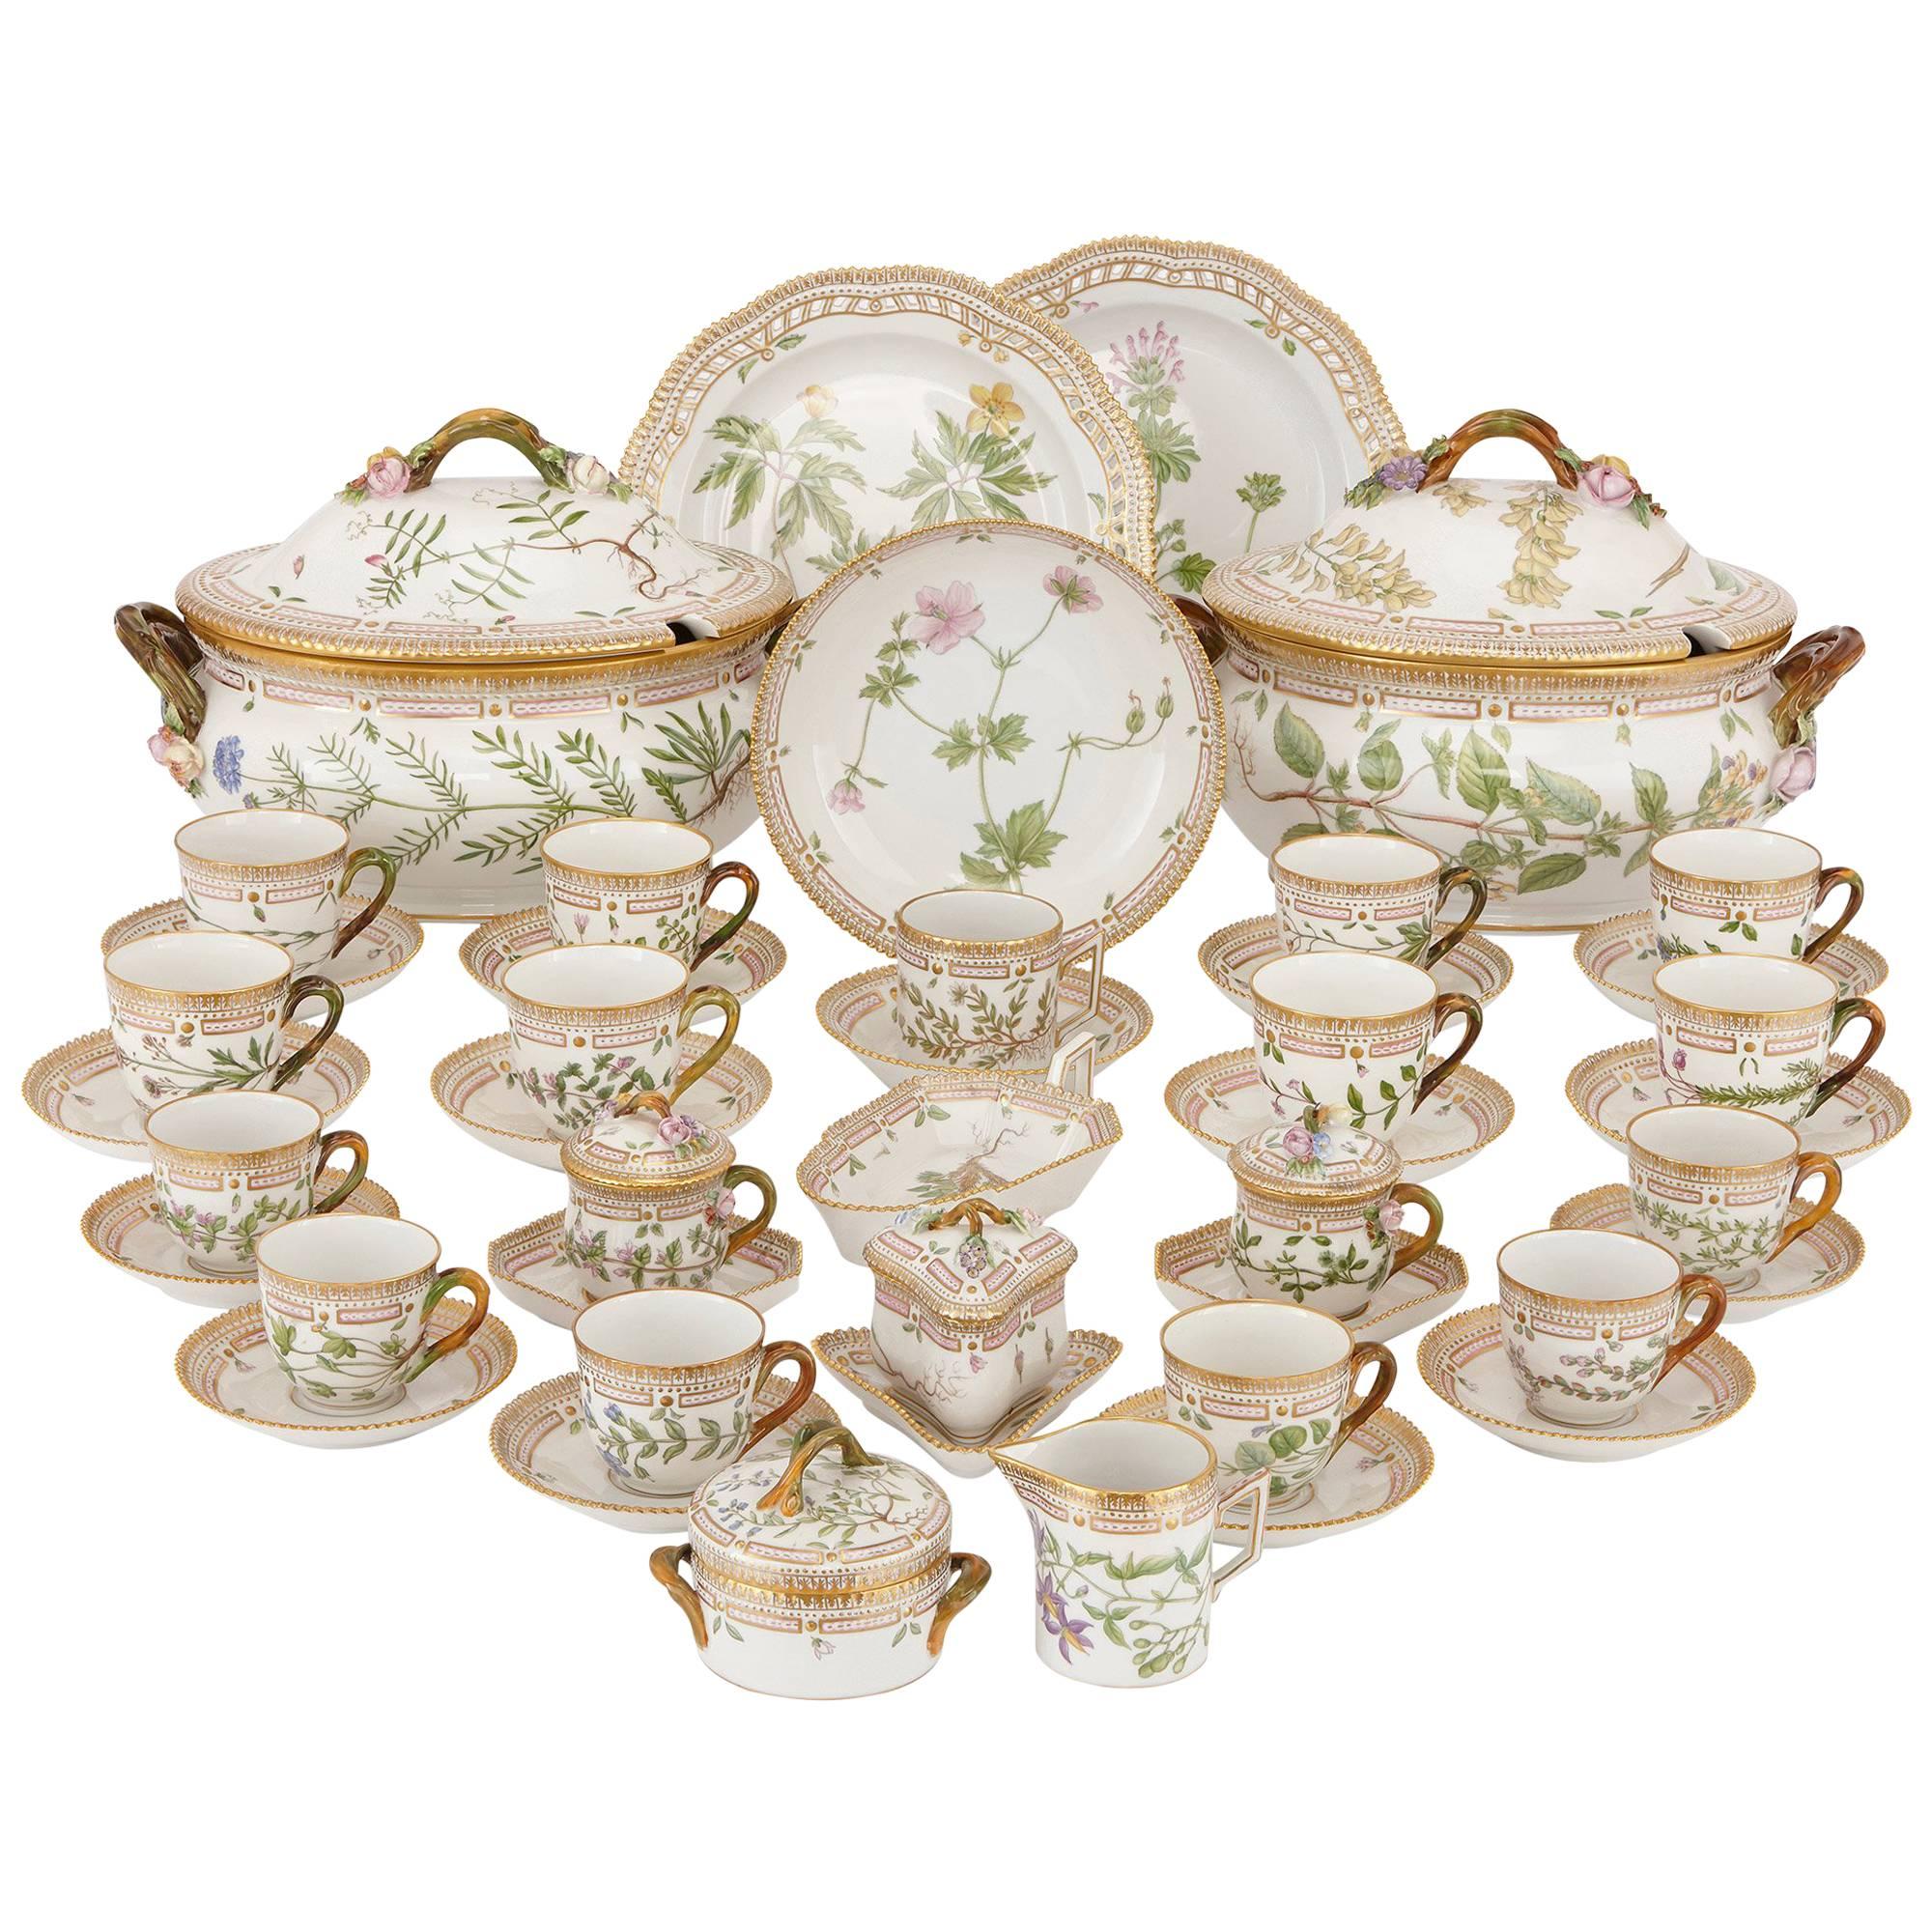 Antique 'Flora Danica' Porcelain Dinner Service by Royal Copenhagen